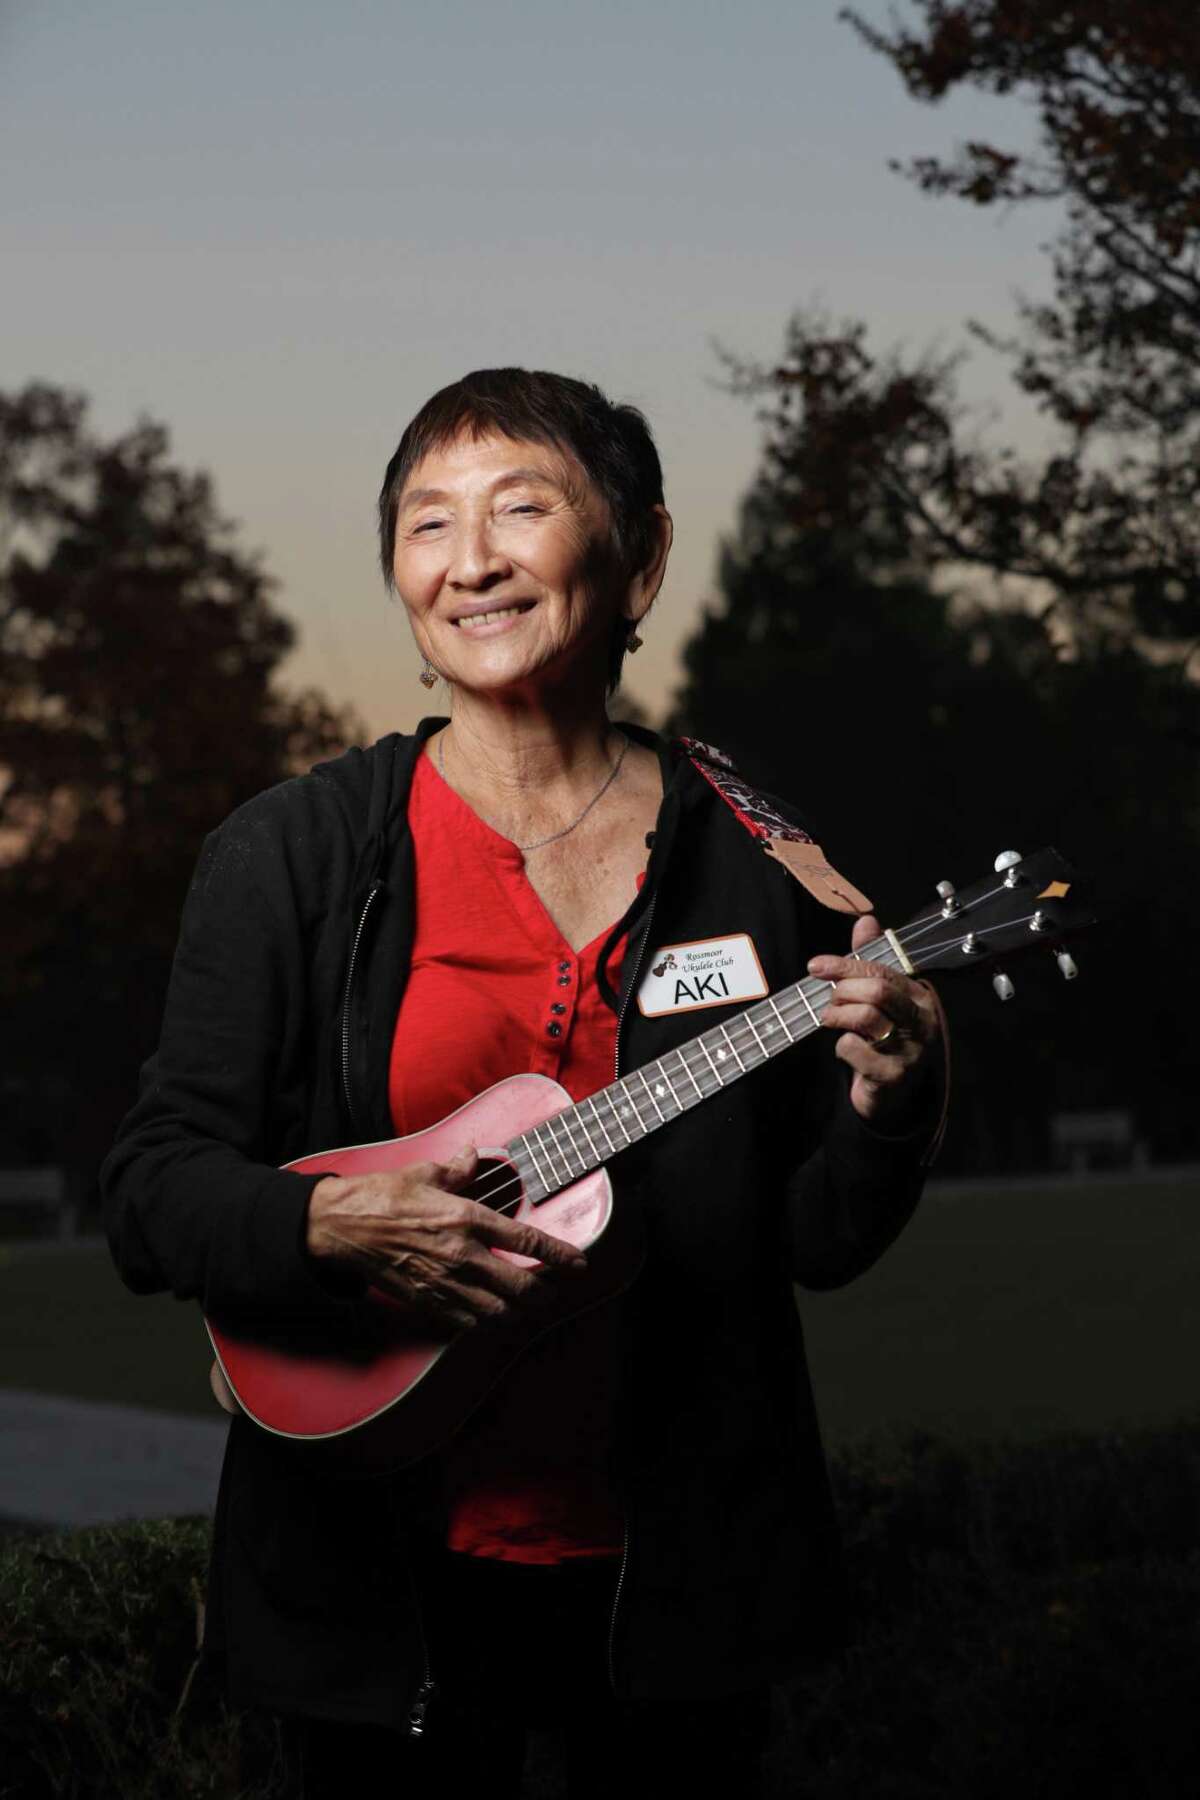 阿基·拉斯穆森(Aki Rasmussen)是核桃溪罗斯穆尔退休社区的四弦琴演奏家。